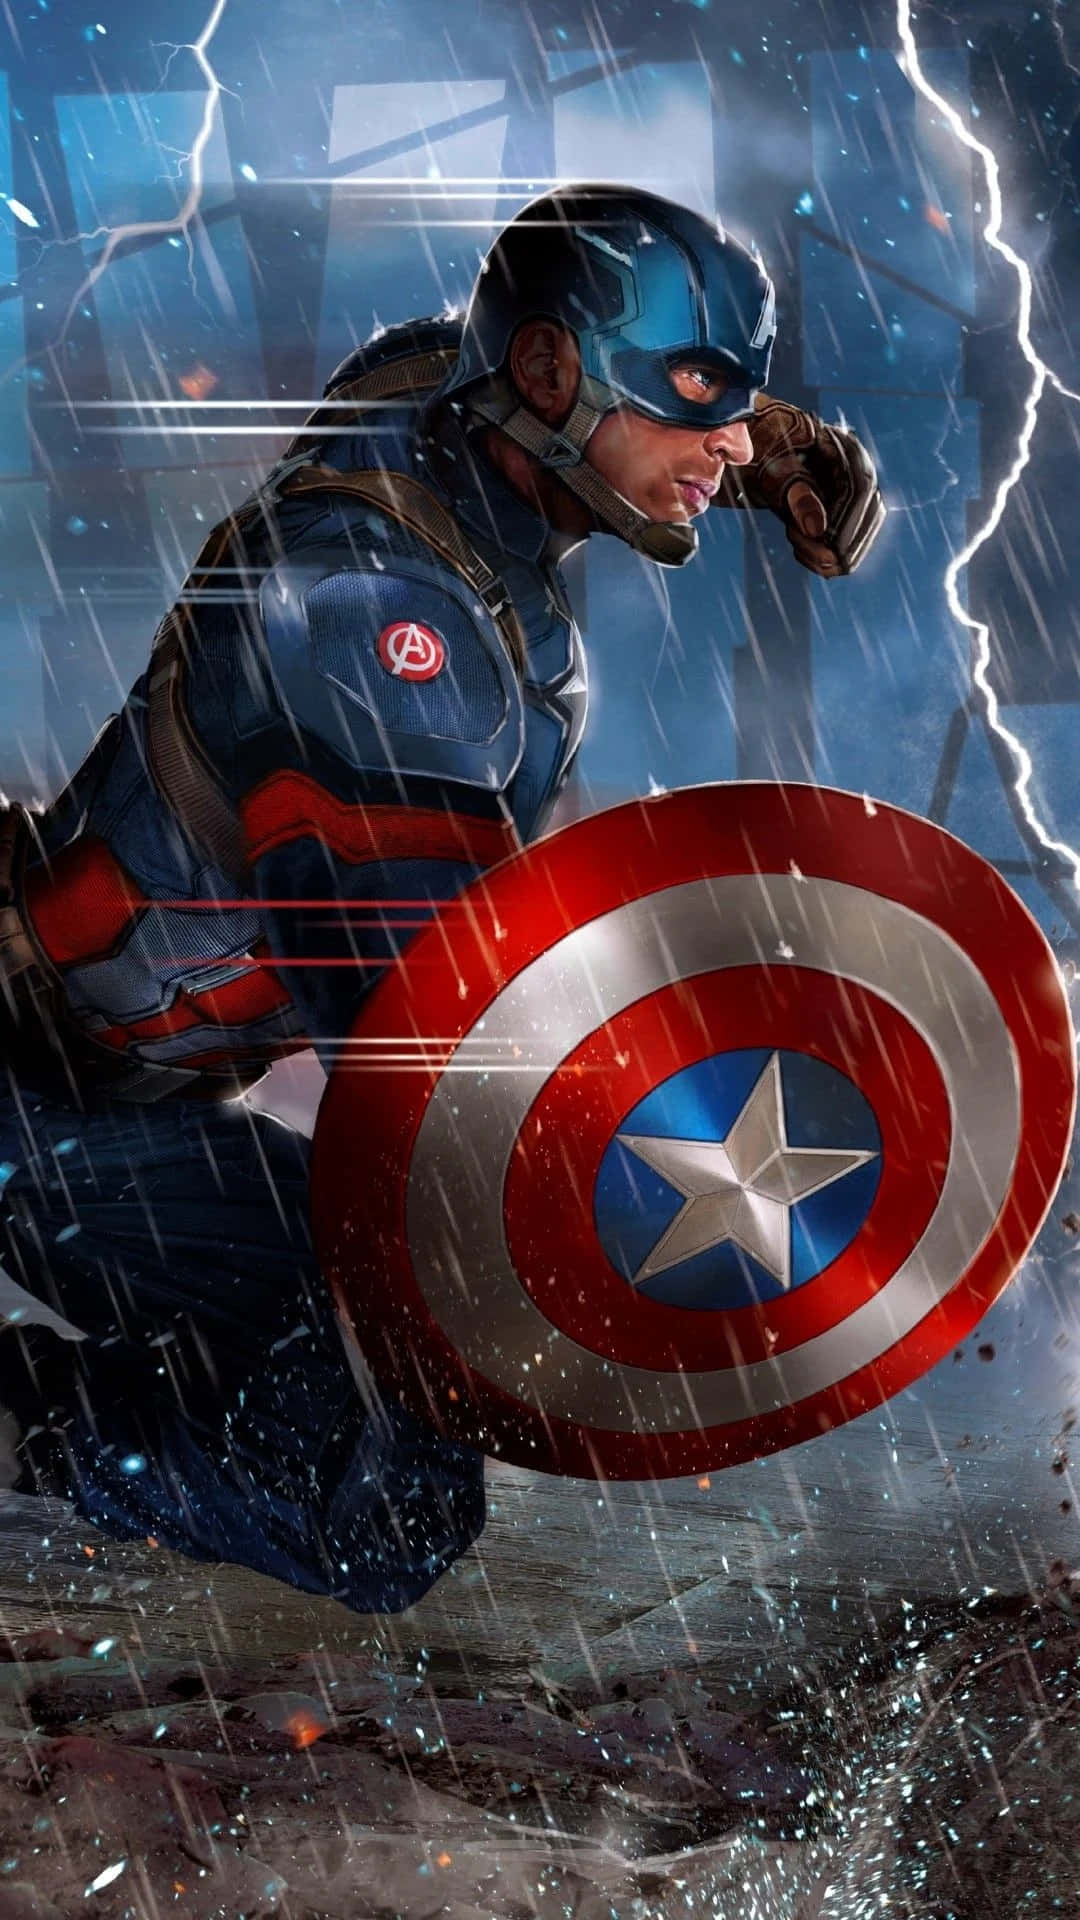 Proteggendoil Mondo Con Un'immagine Di Capitan America Ispirata Ad Android.